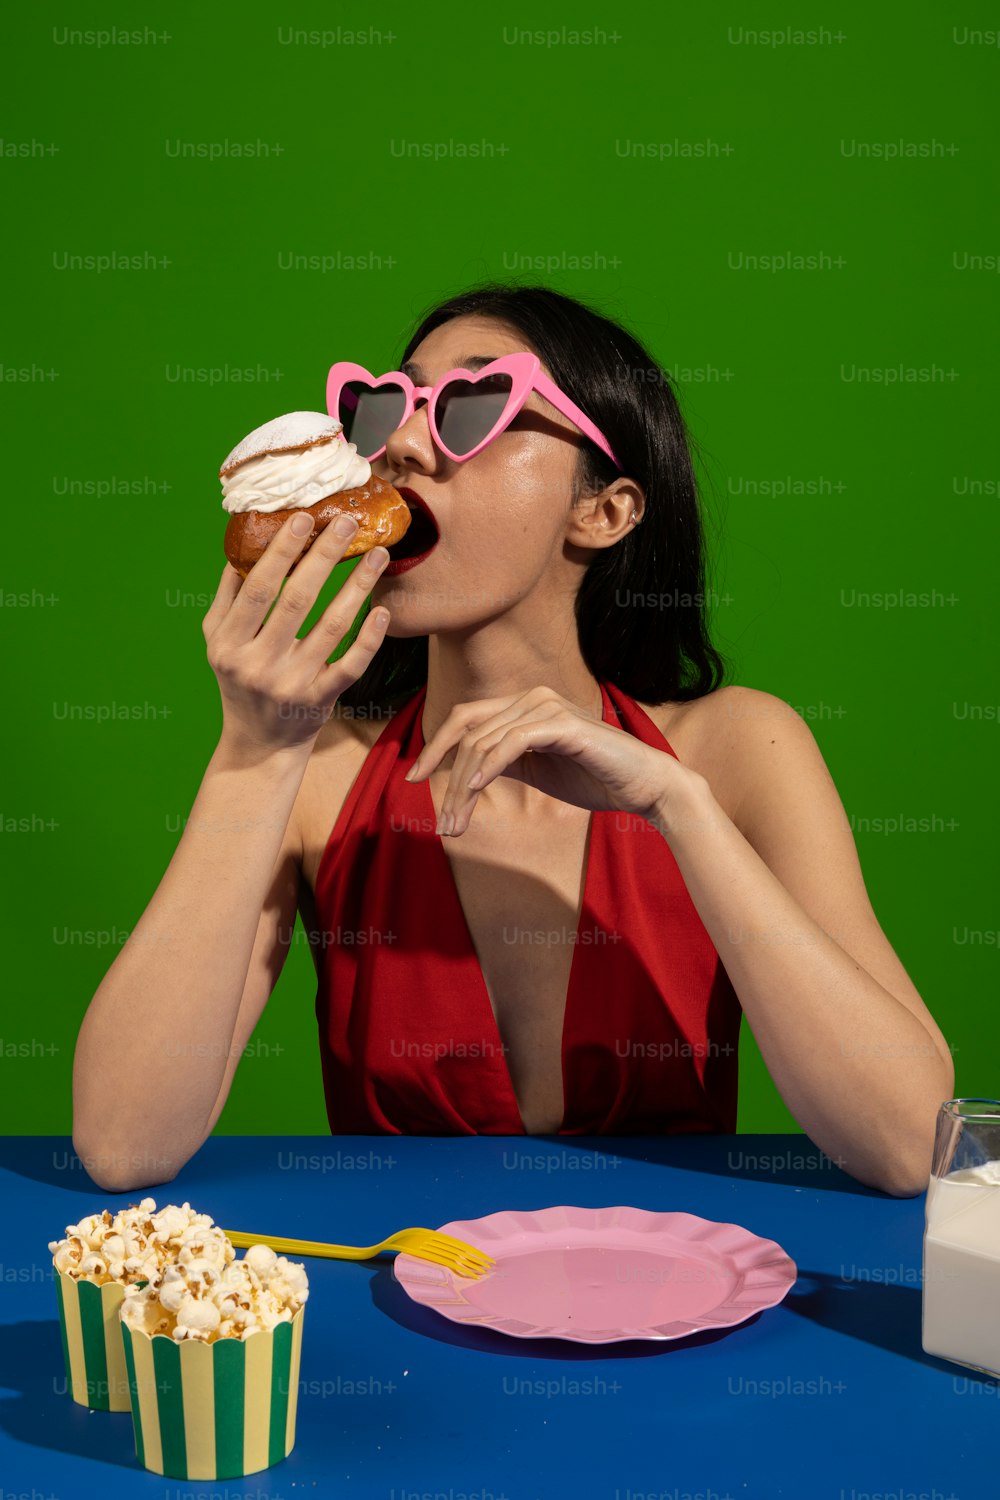 빨간 드레스를 입��은 여자가 컵케이크를 먹고 있다